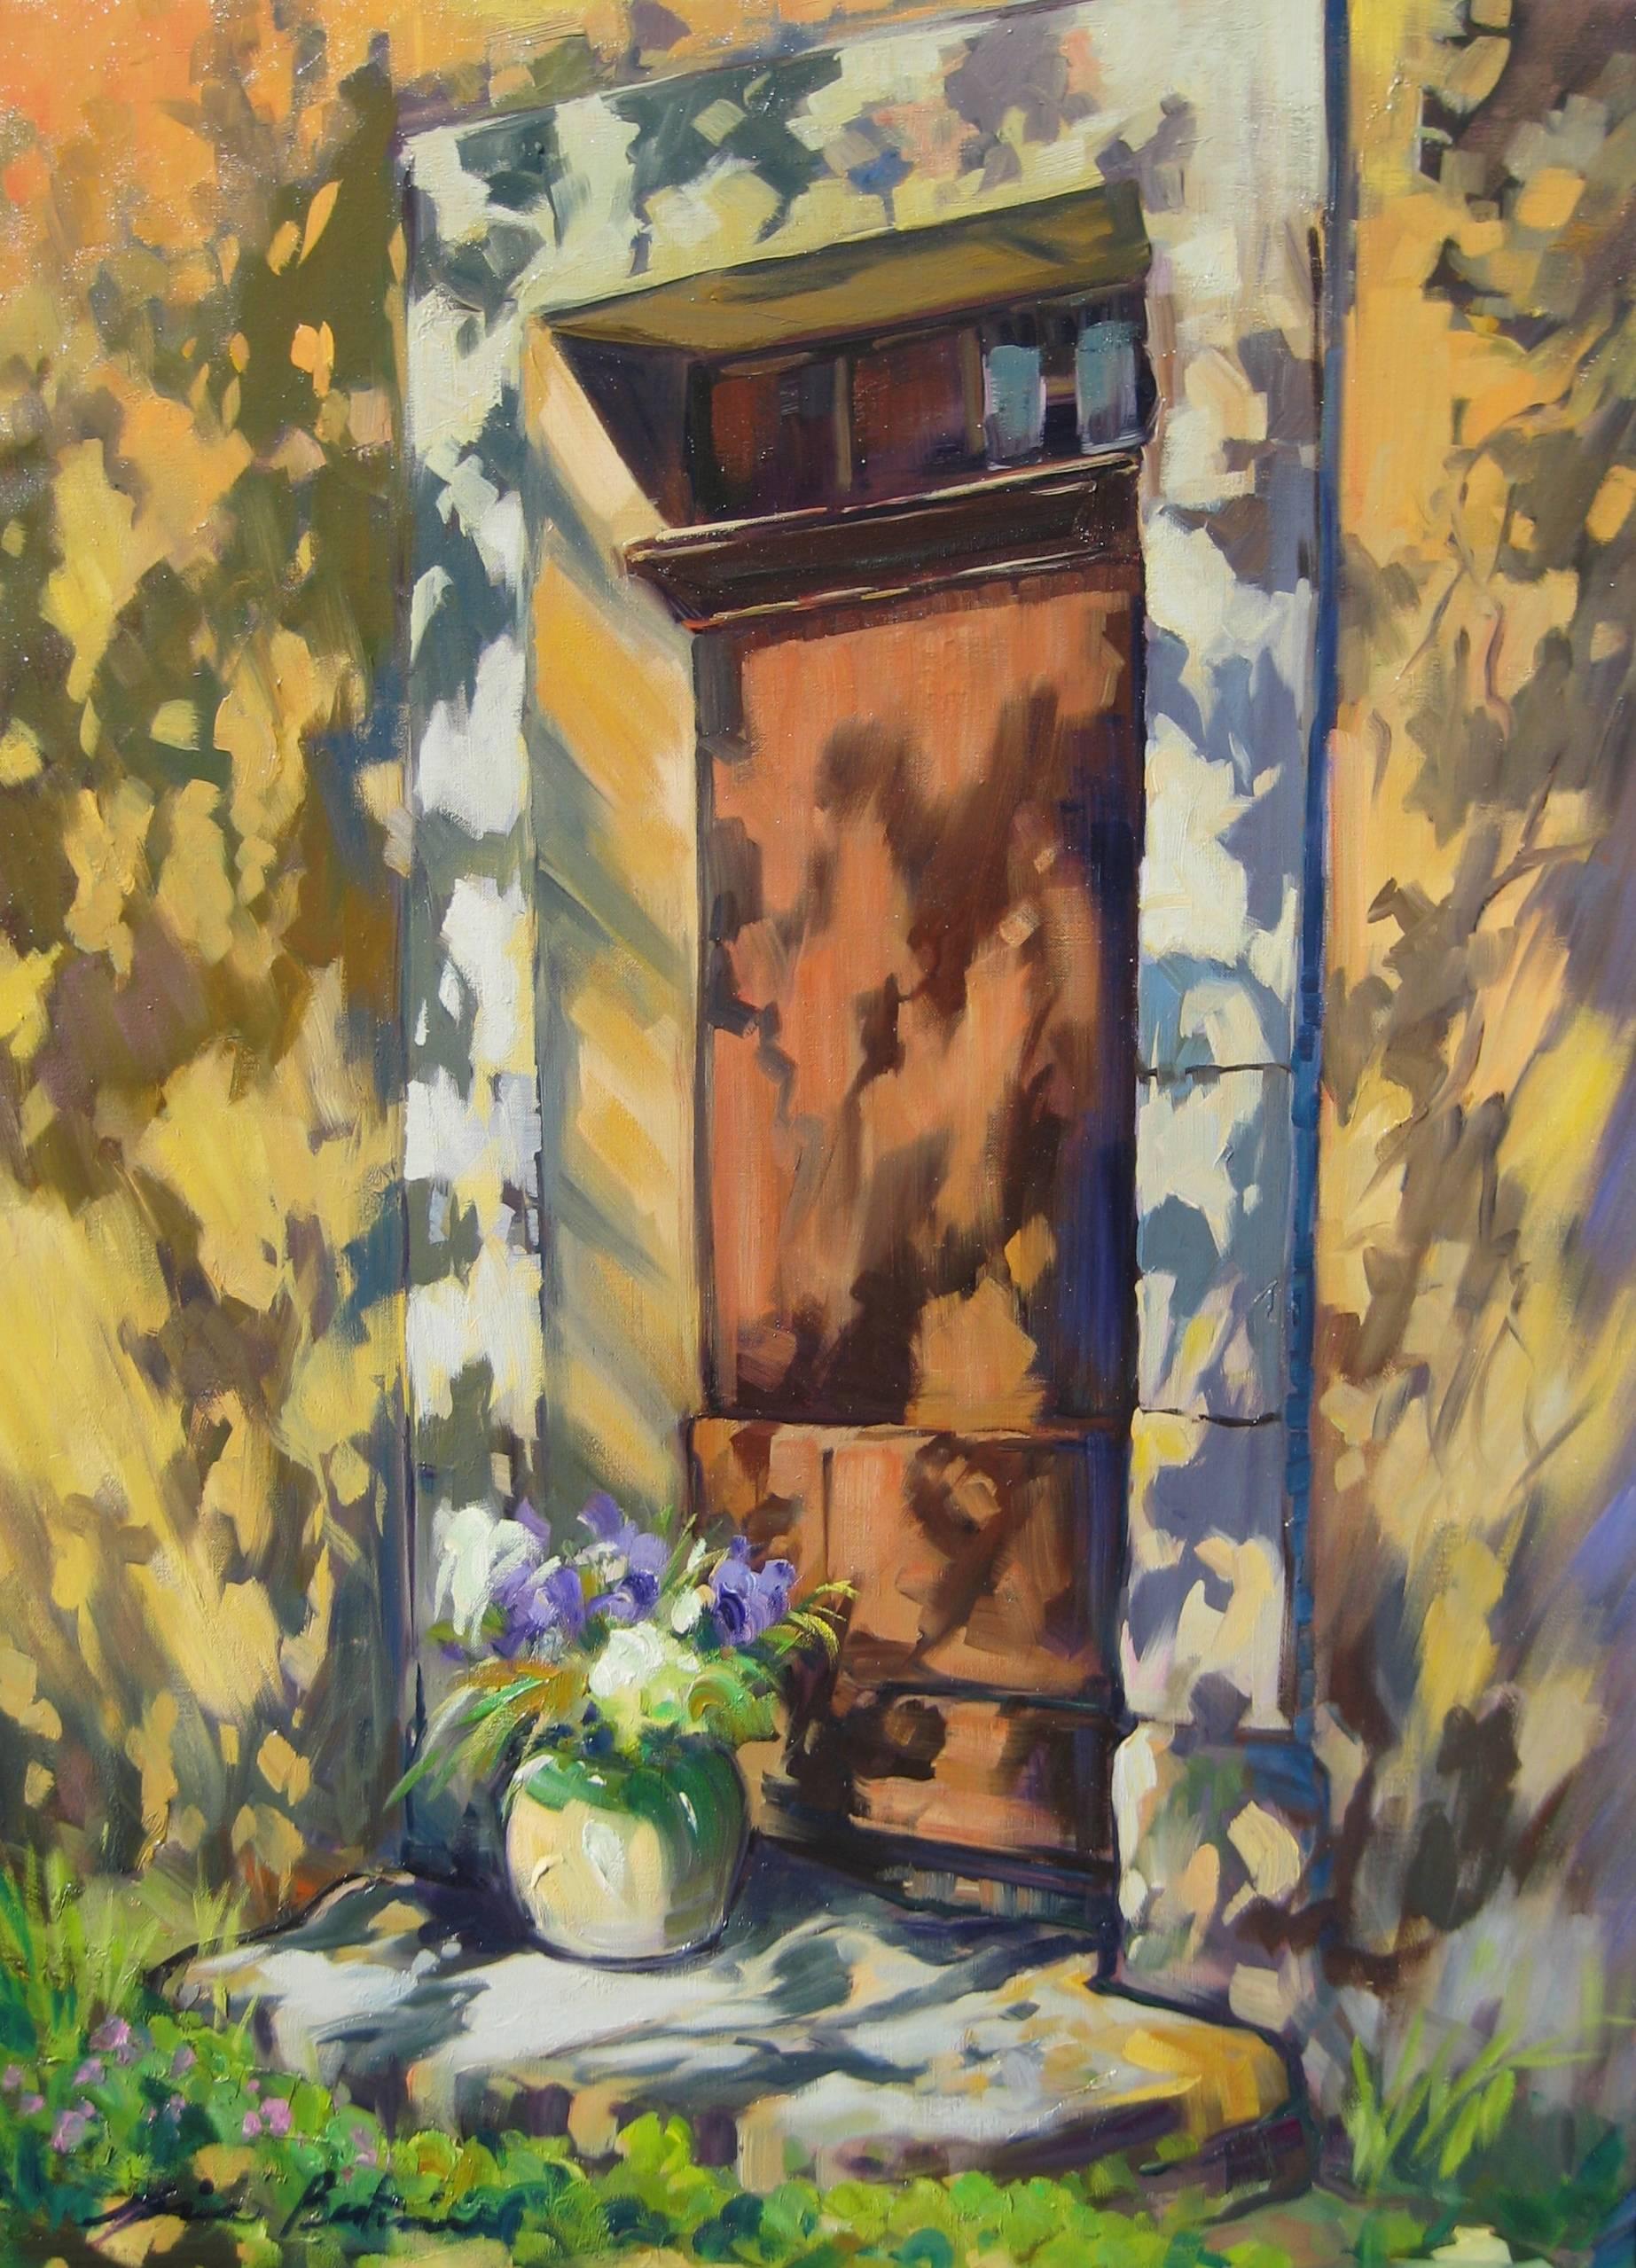 Maria Bertrán Landscape Painting – Zeitgenössisches impressionistisches Ölgemälde „Schirmen an der Tür“ von Maria Bertran, „Shadows On The Door“